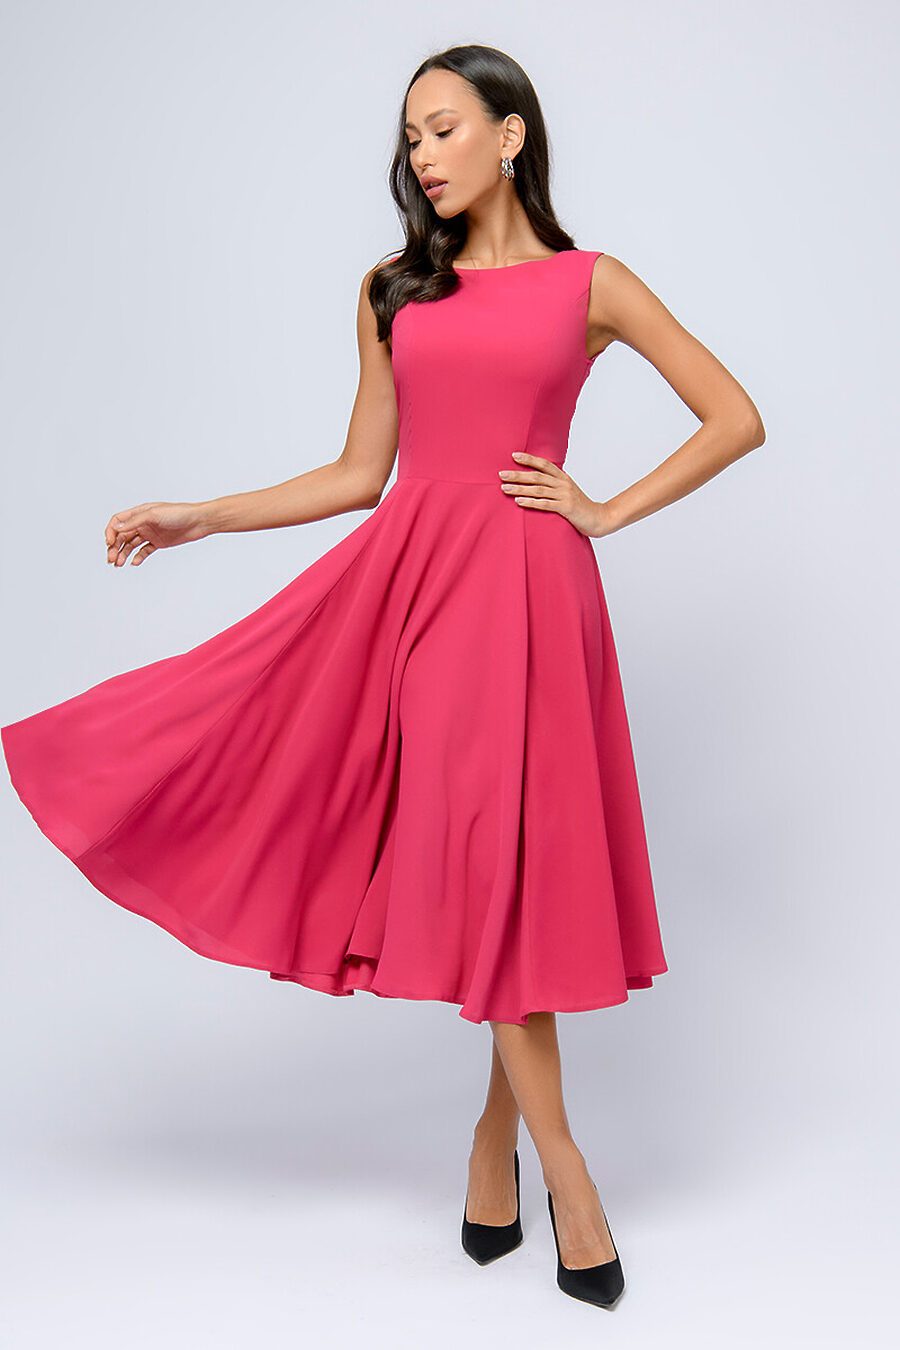 Платье для женщин 1001 DRESS 807706 купить оптом от производителя. Совместная покупка женской одежды в OptMoyo